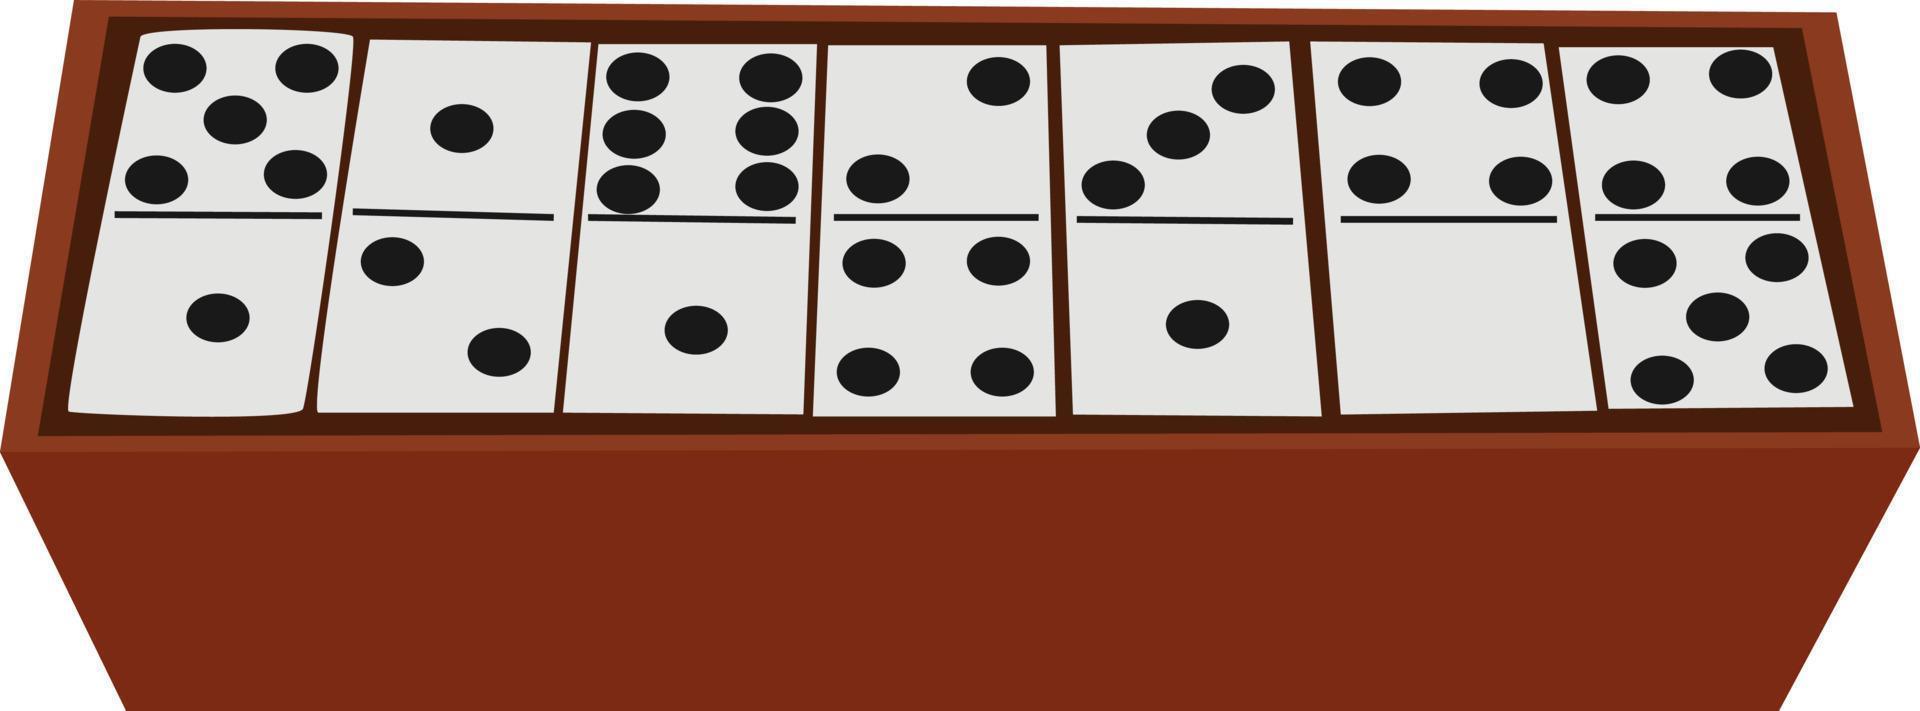 Dominosteine im Feld, Illustration, Vektor auf weißem Hintergrund